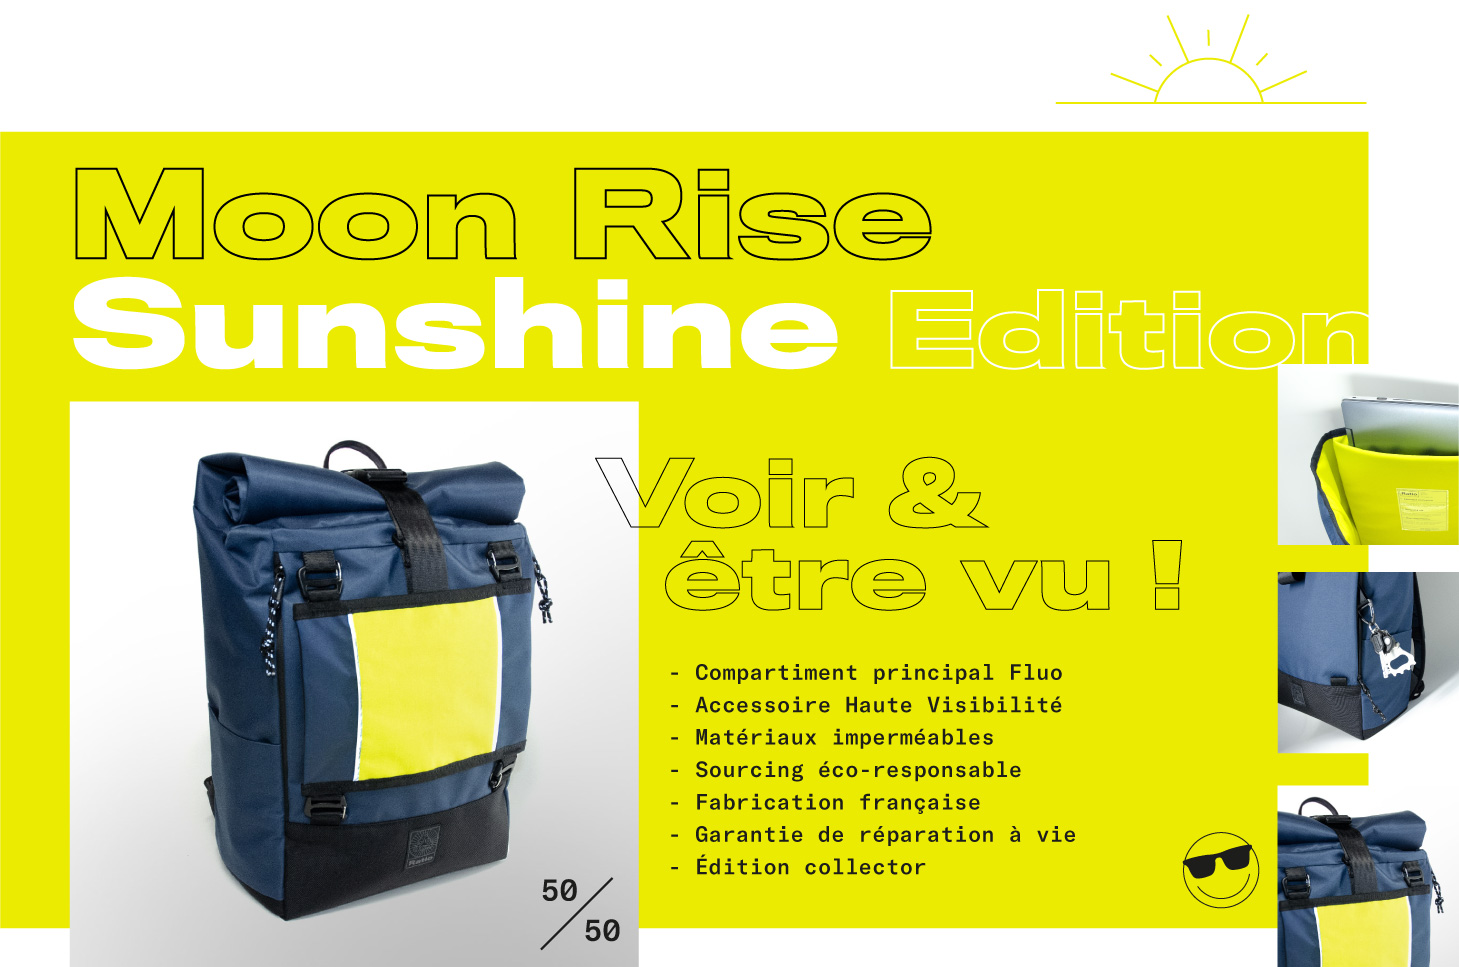 Moon Rise Sunshine Edition sac à dos vélotaf haute visibilité